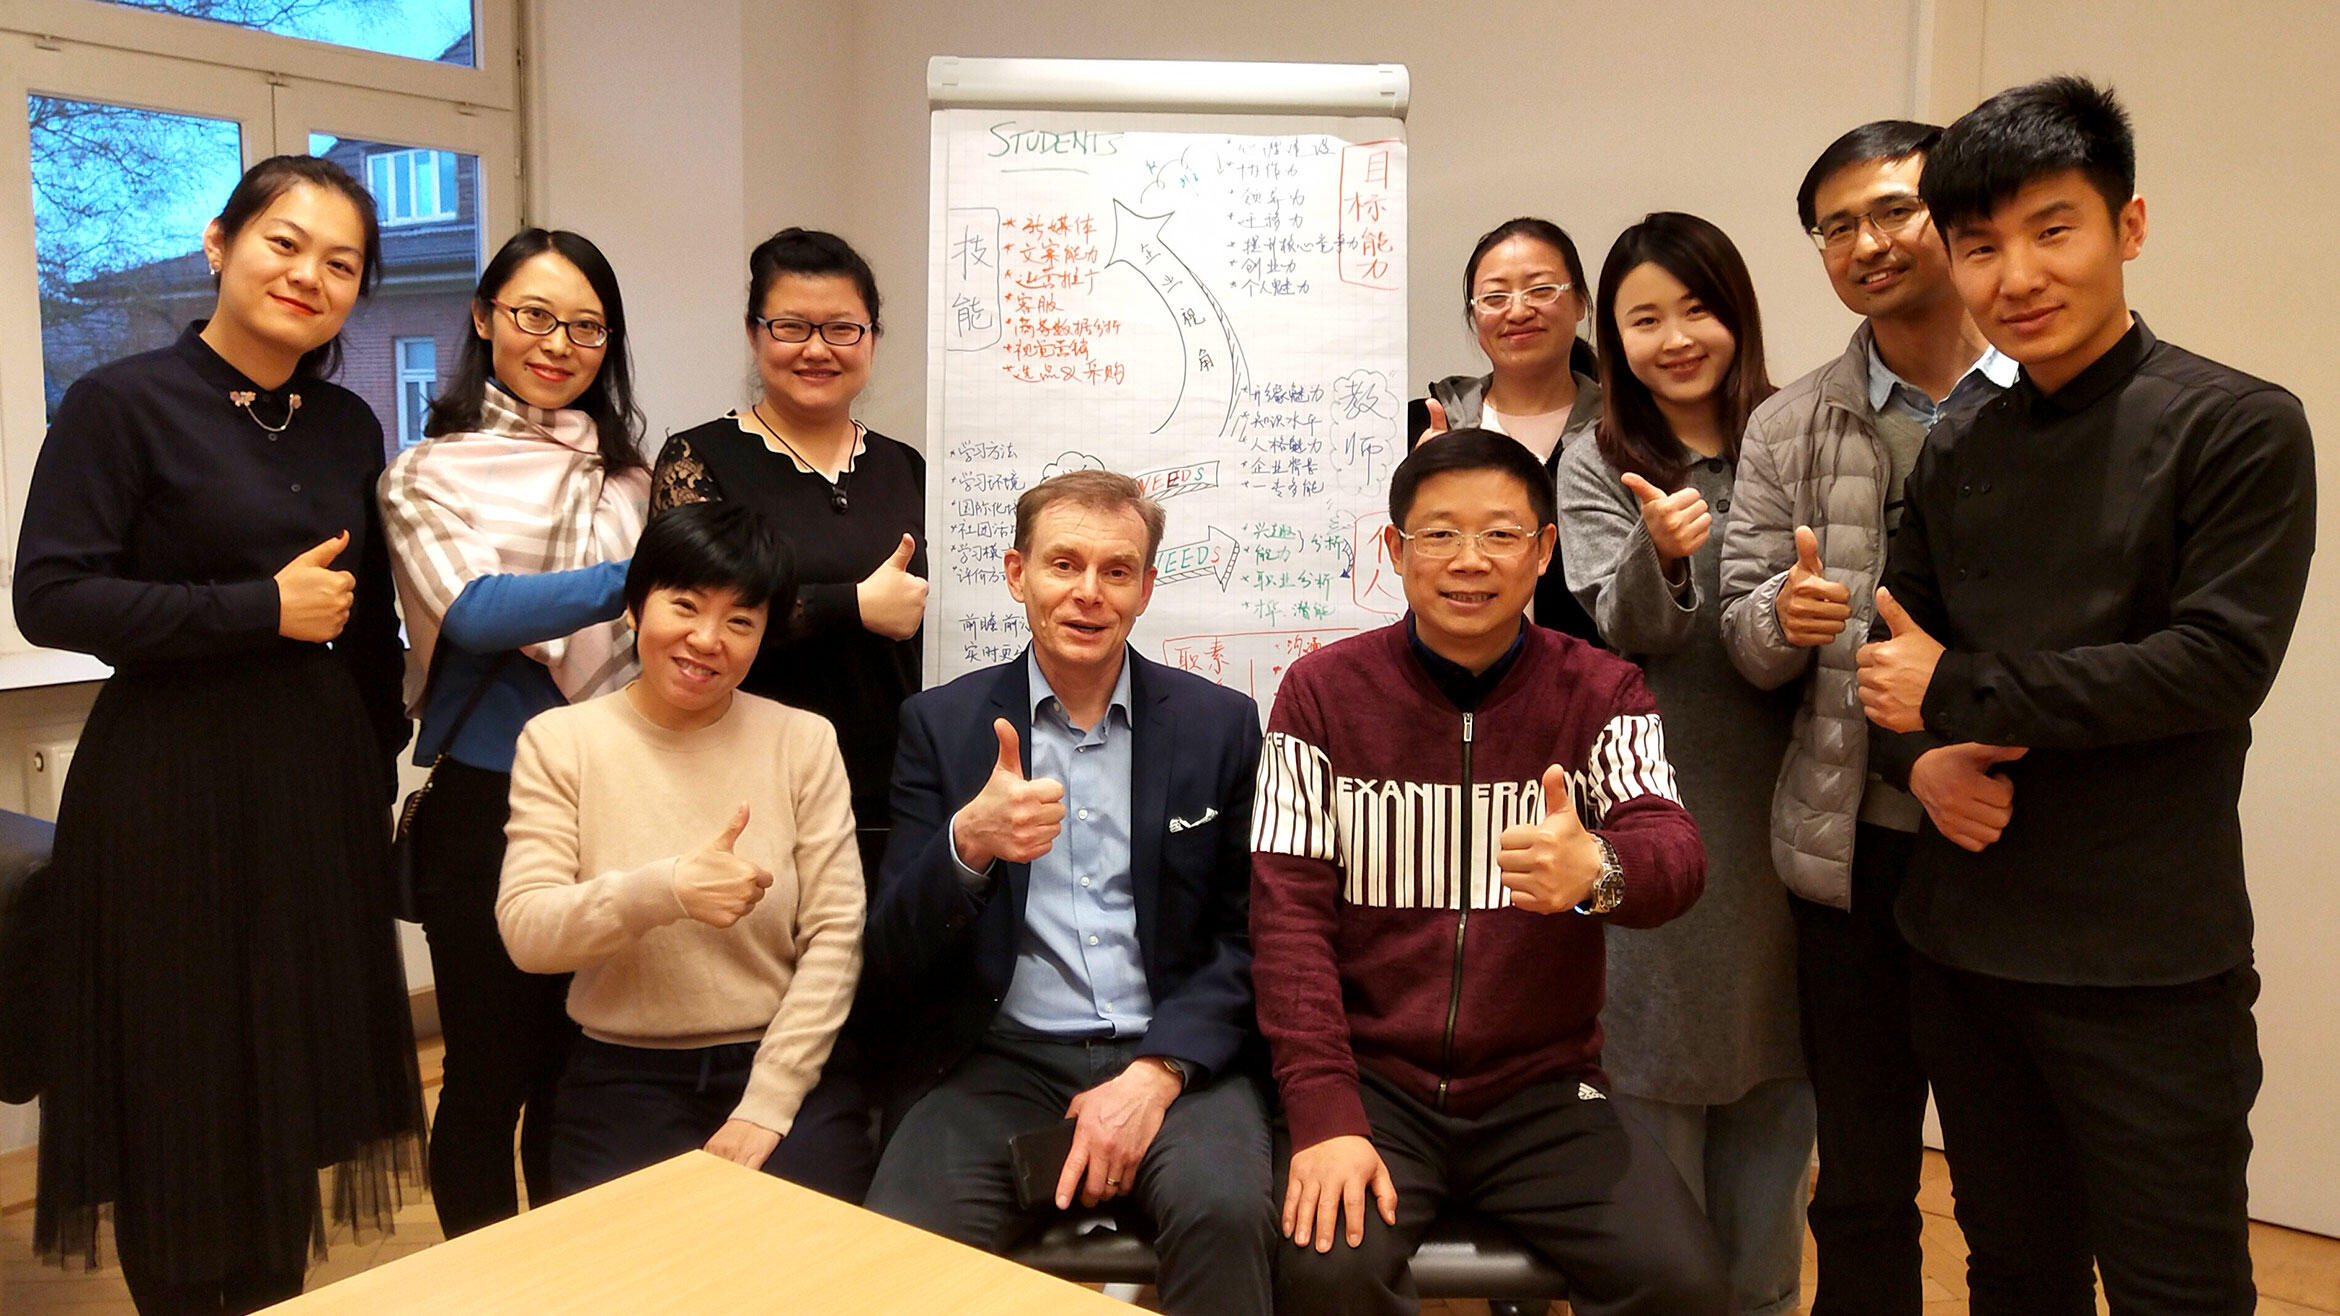 Gruppenbild: chinesische Berufsschullehrkräfte mit deutschem Trainer in einem Klassenraum